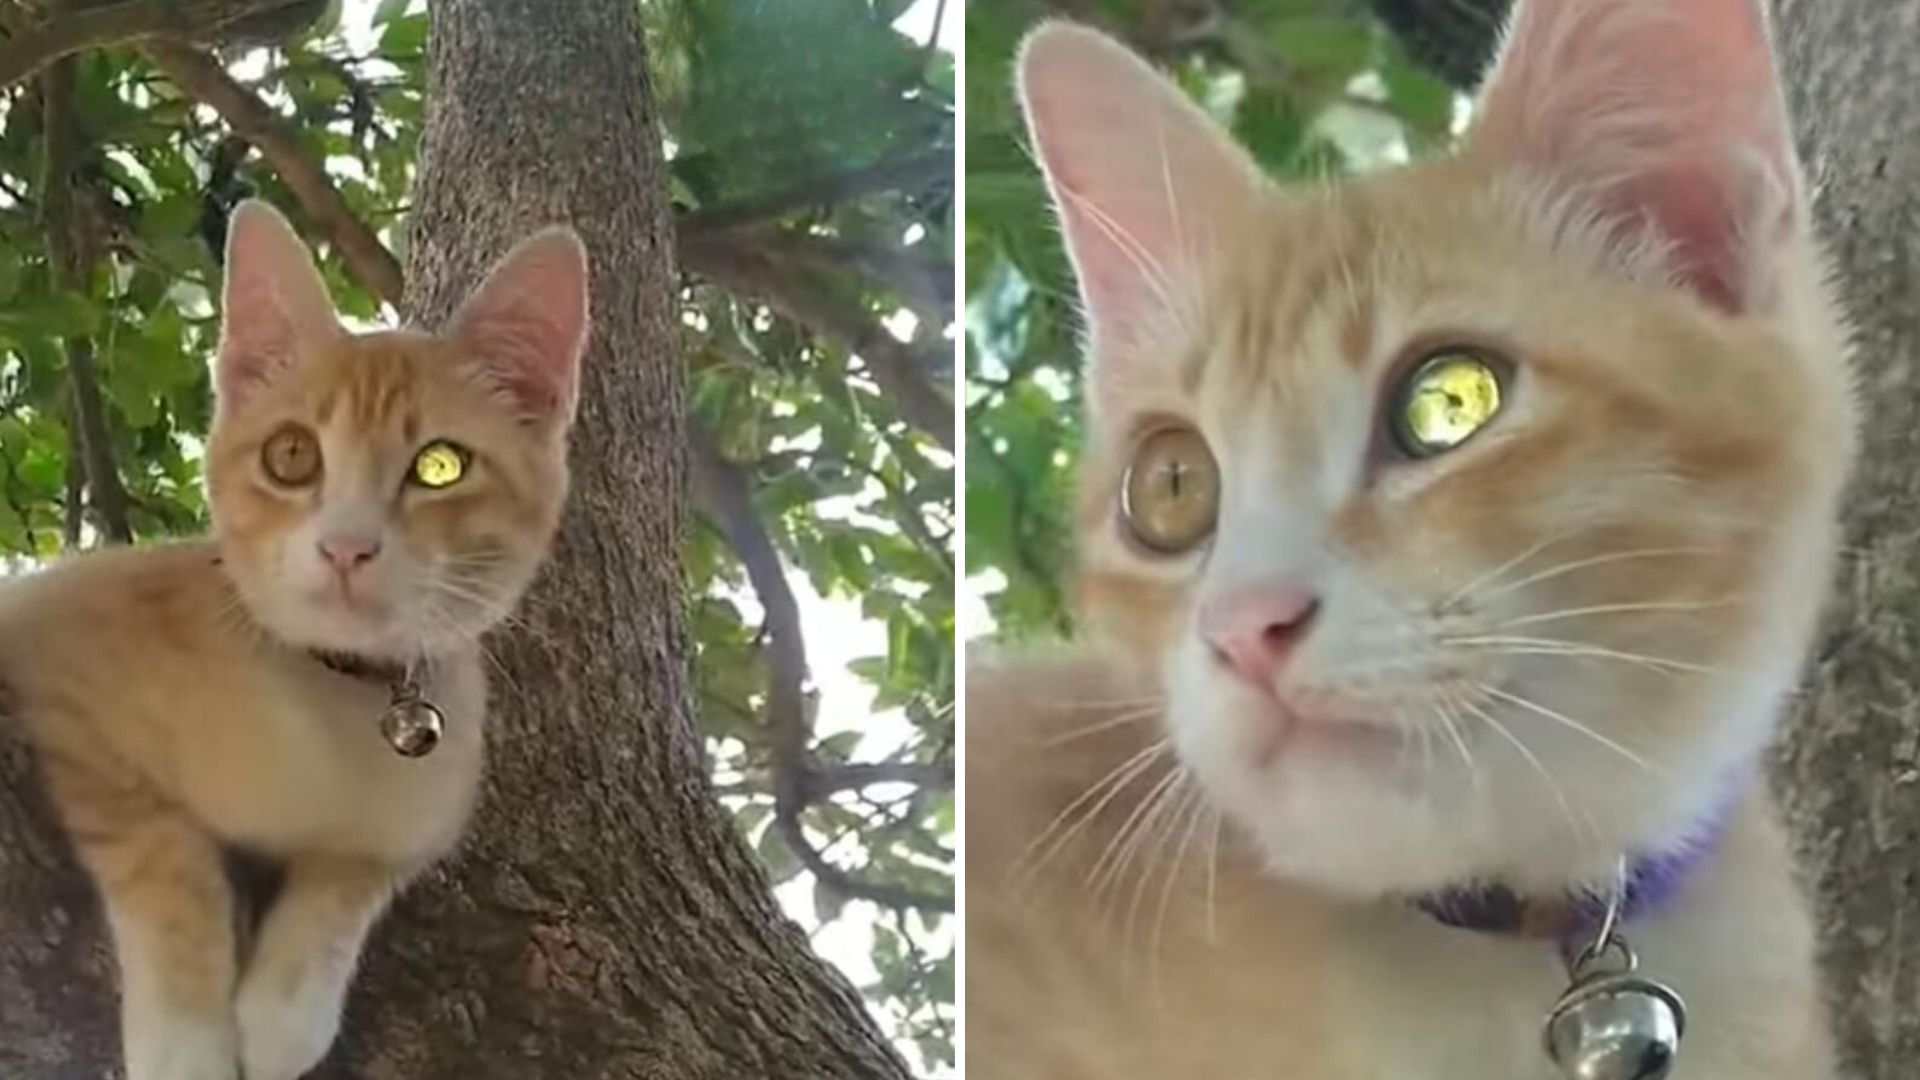 ginger kitten with diamond-like eye